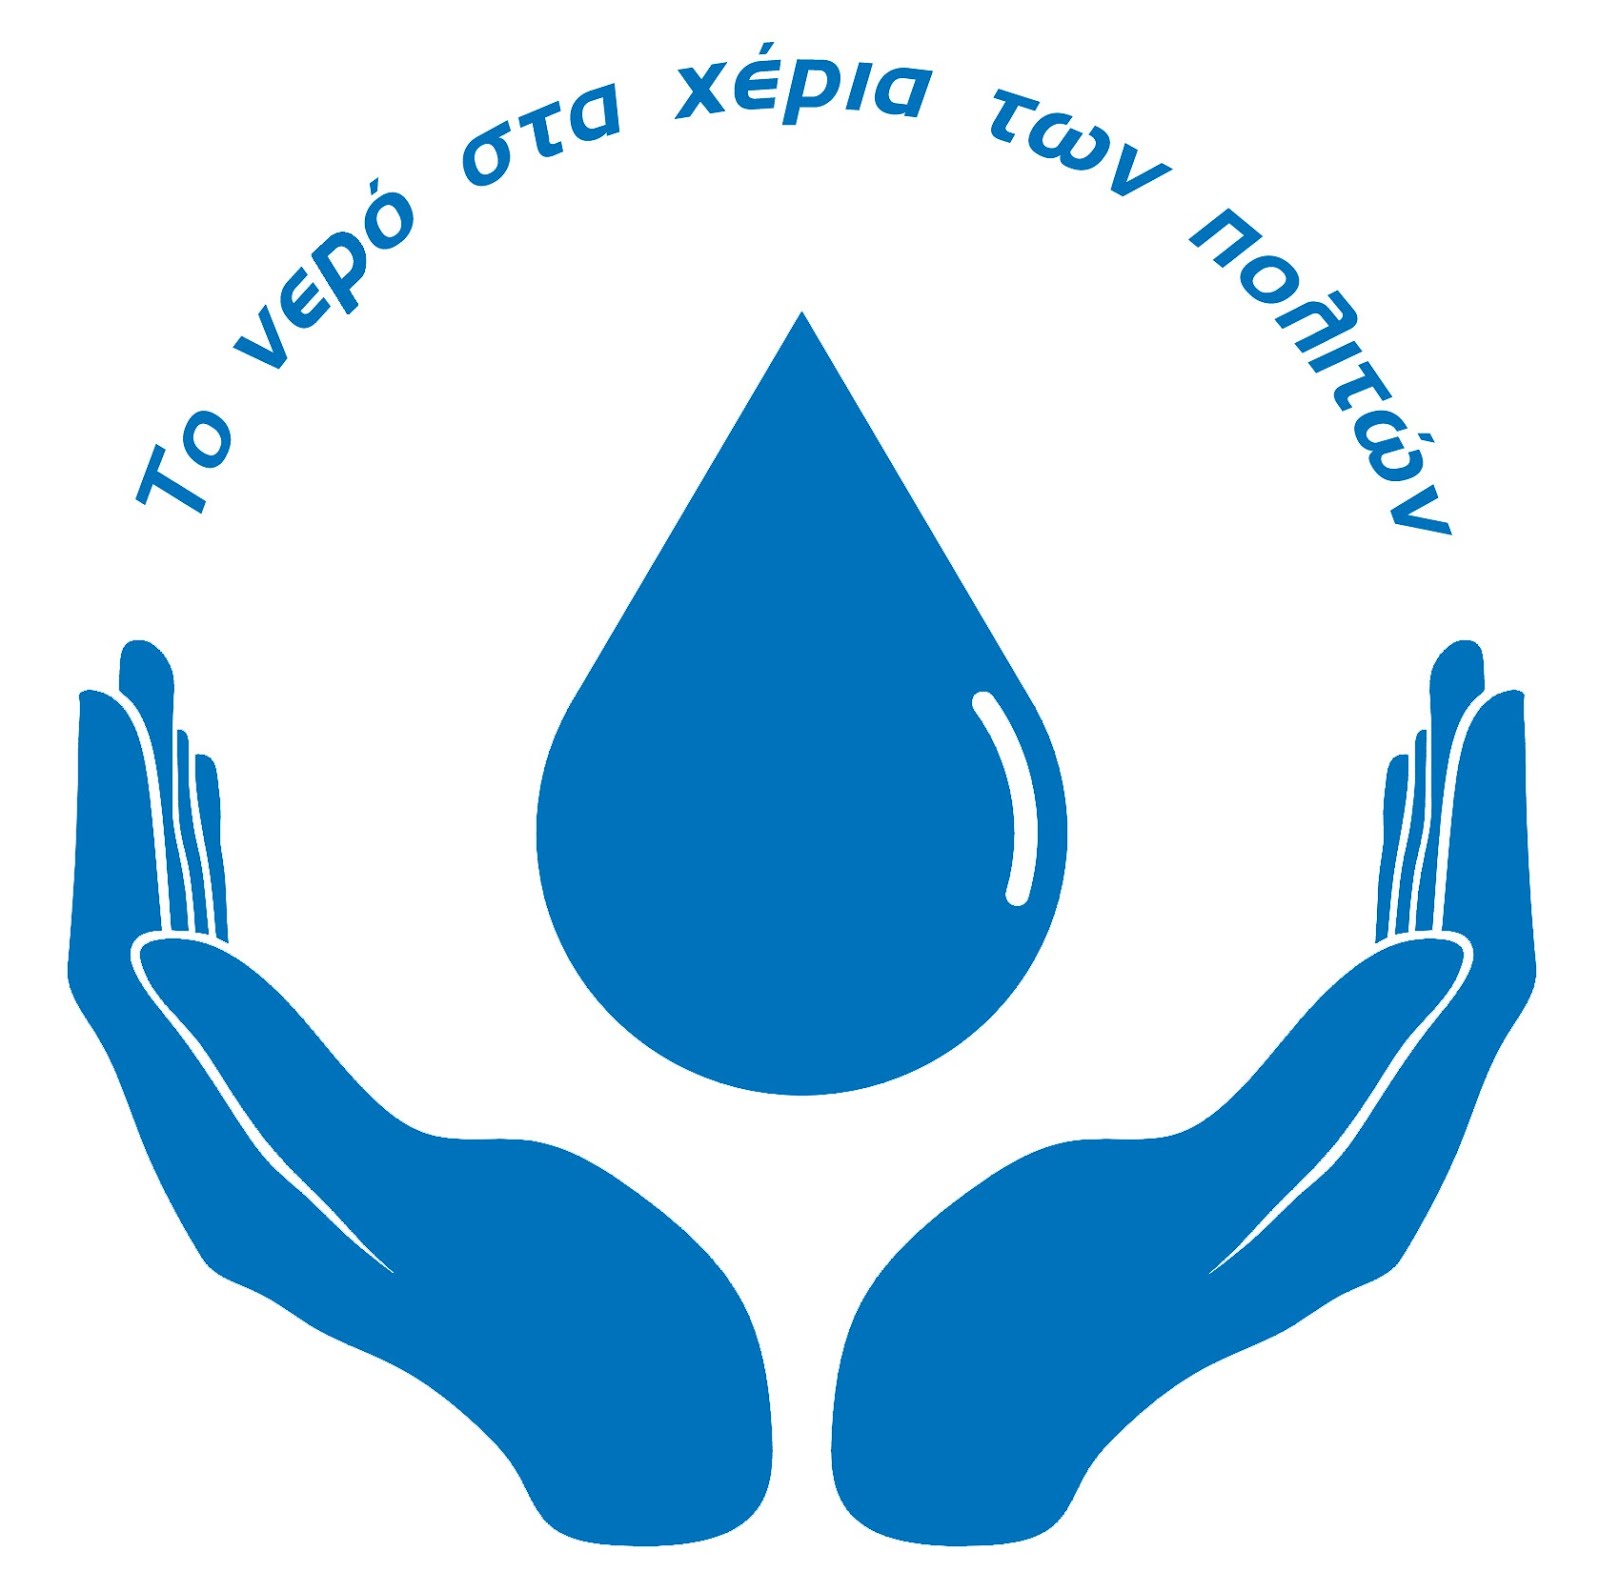 Πρωτοβουλία 62 φορέων Κ.ΑΛ.Ο. για τη συνεταιριστική διαχείριση του νερού της Θεσσαλονίκης